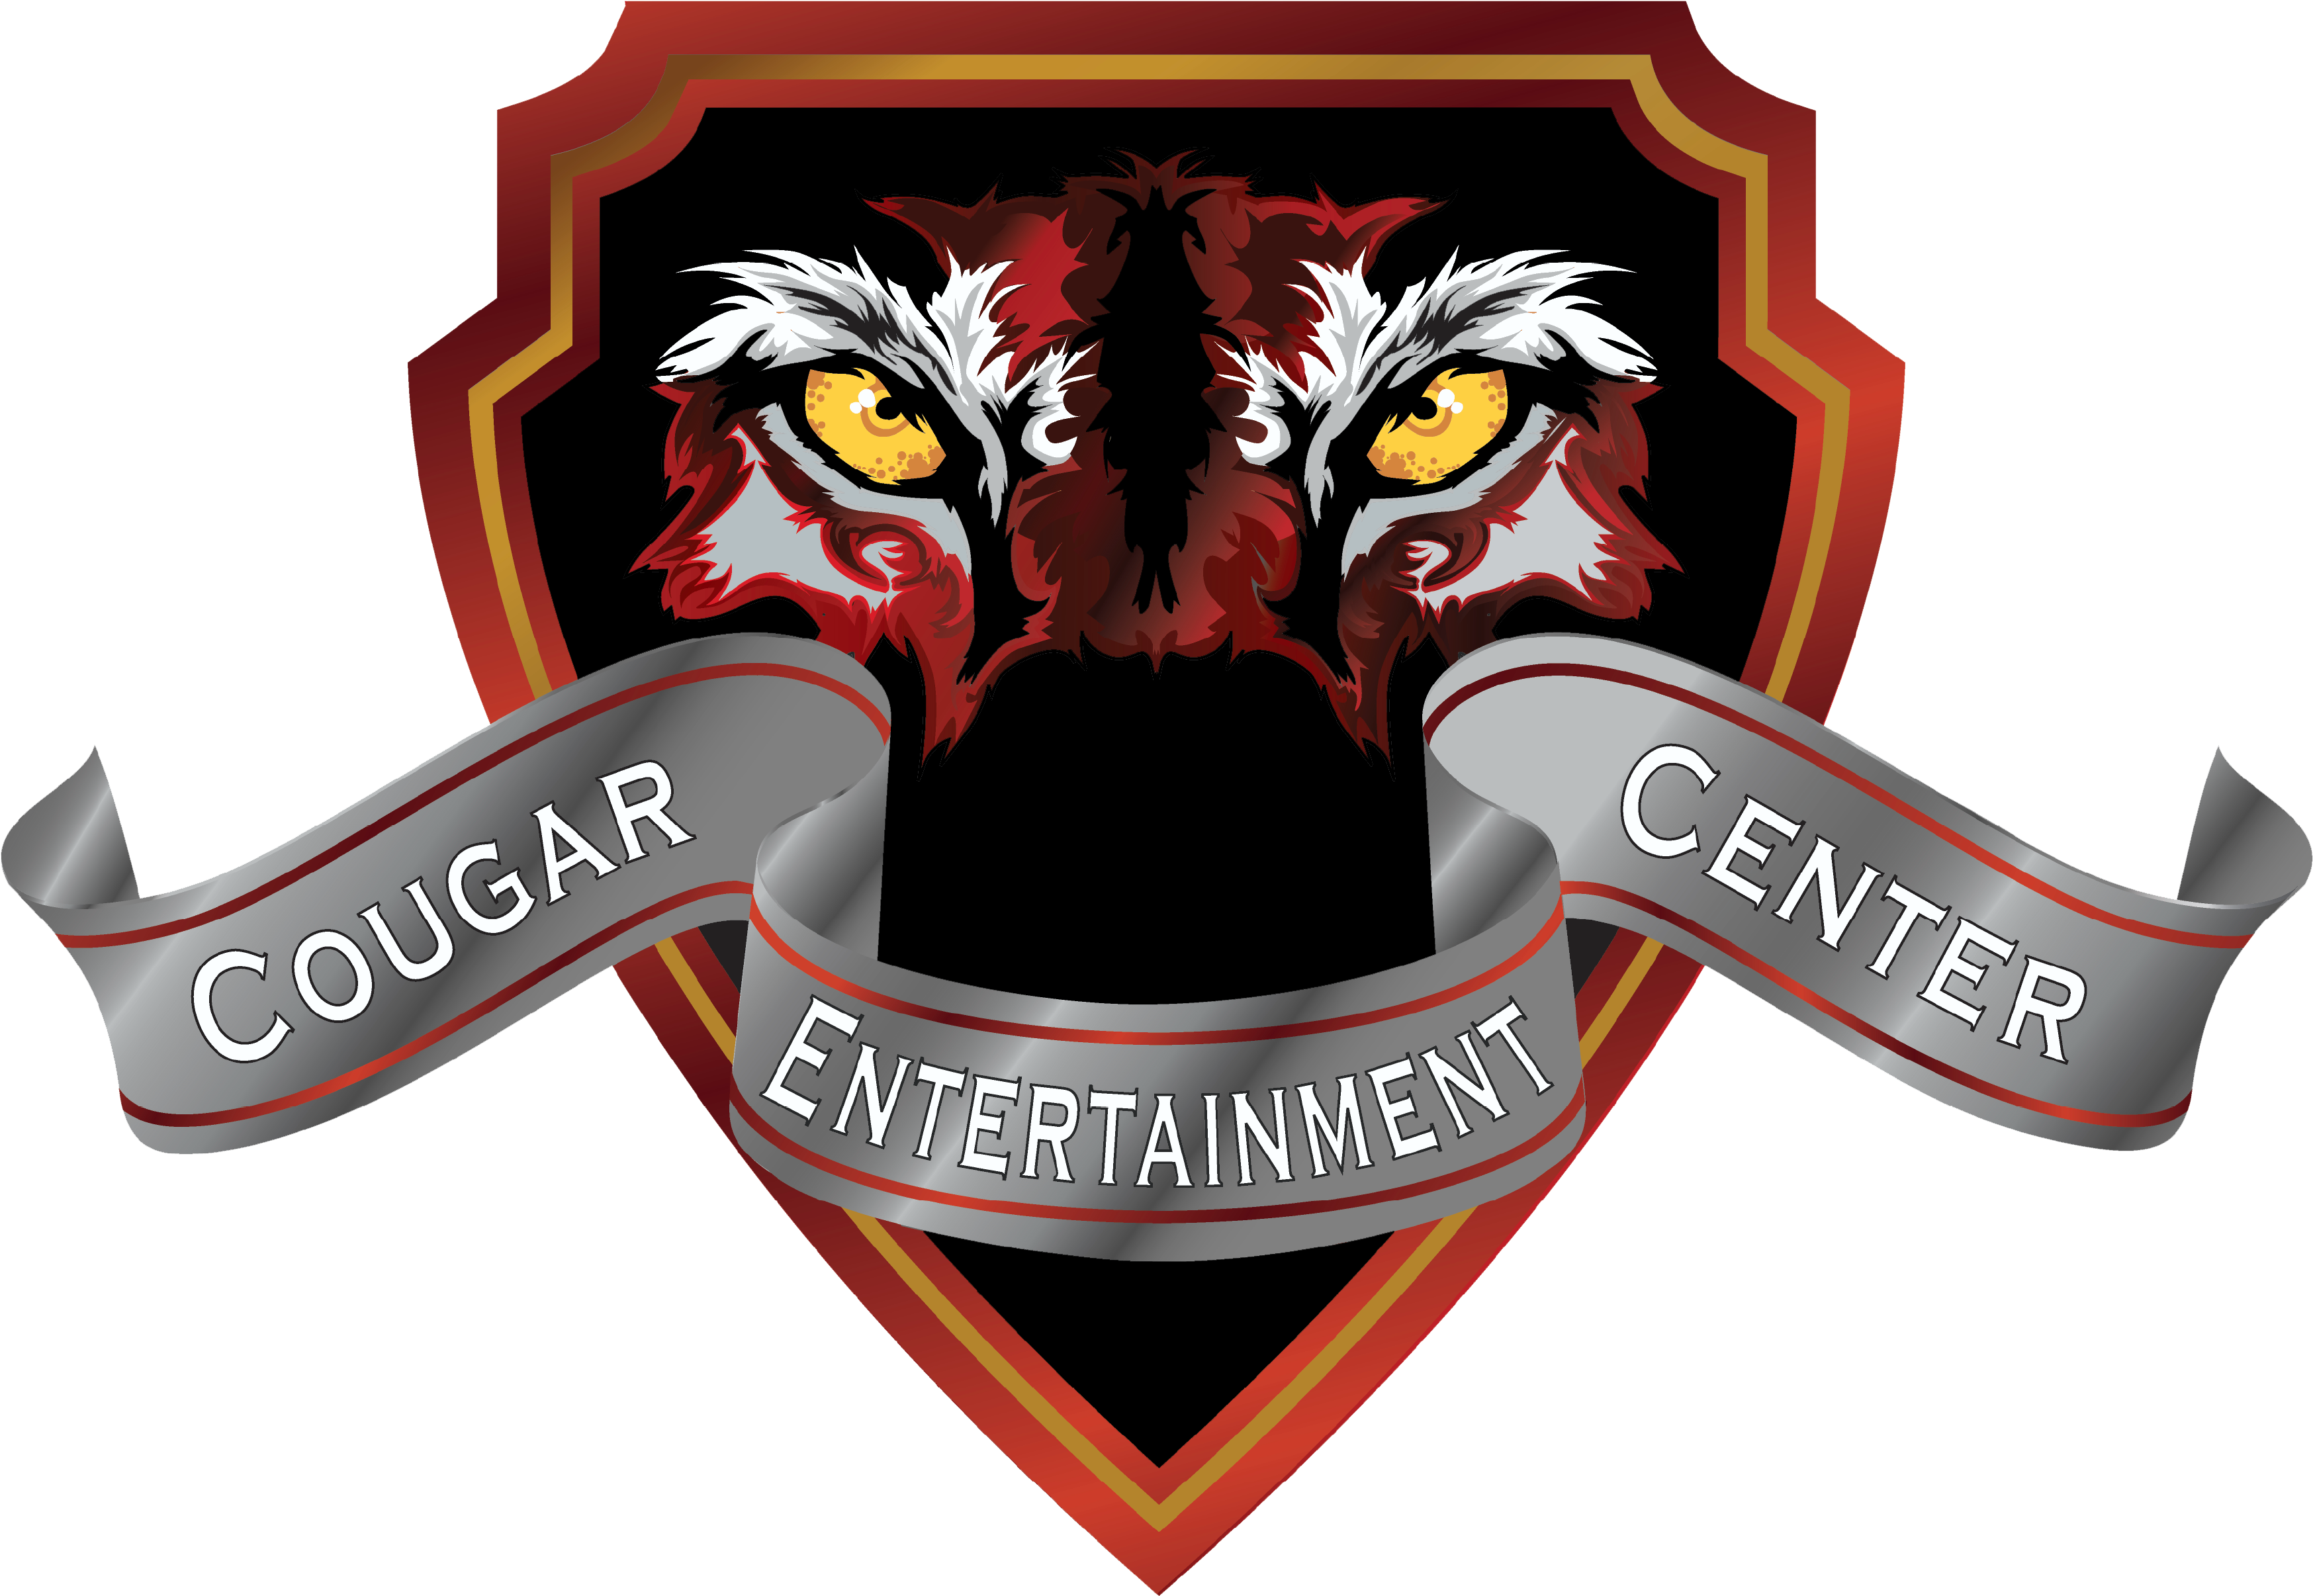 Cougar Entertainment Center Logo